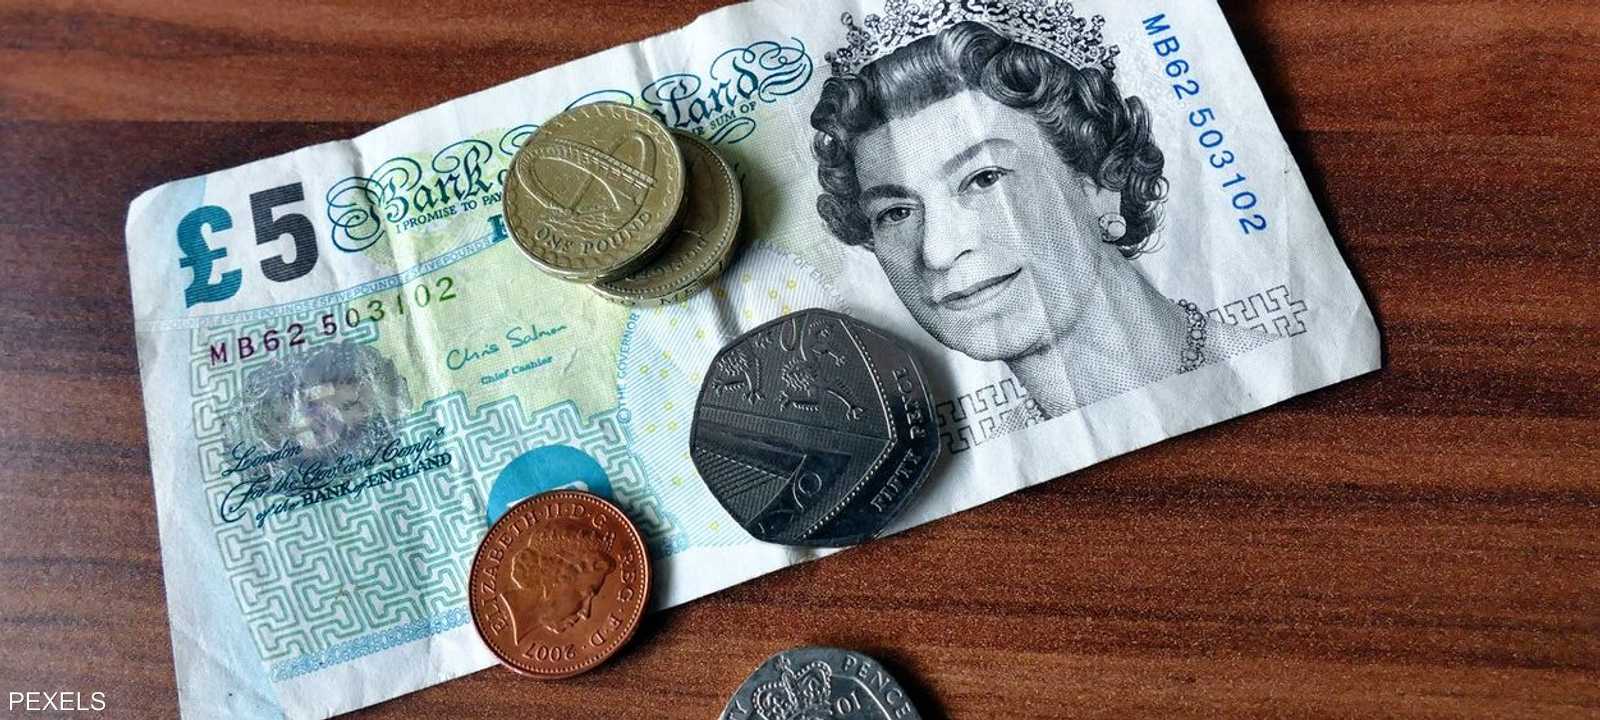 العملة الورقية البريطانية ستوقف عن الاستخدام